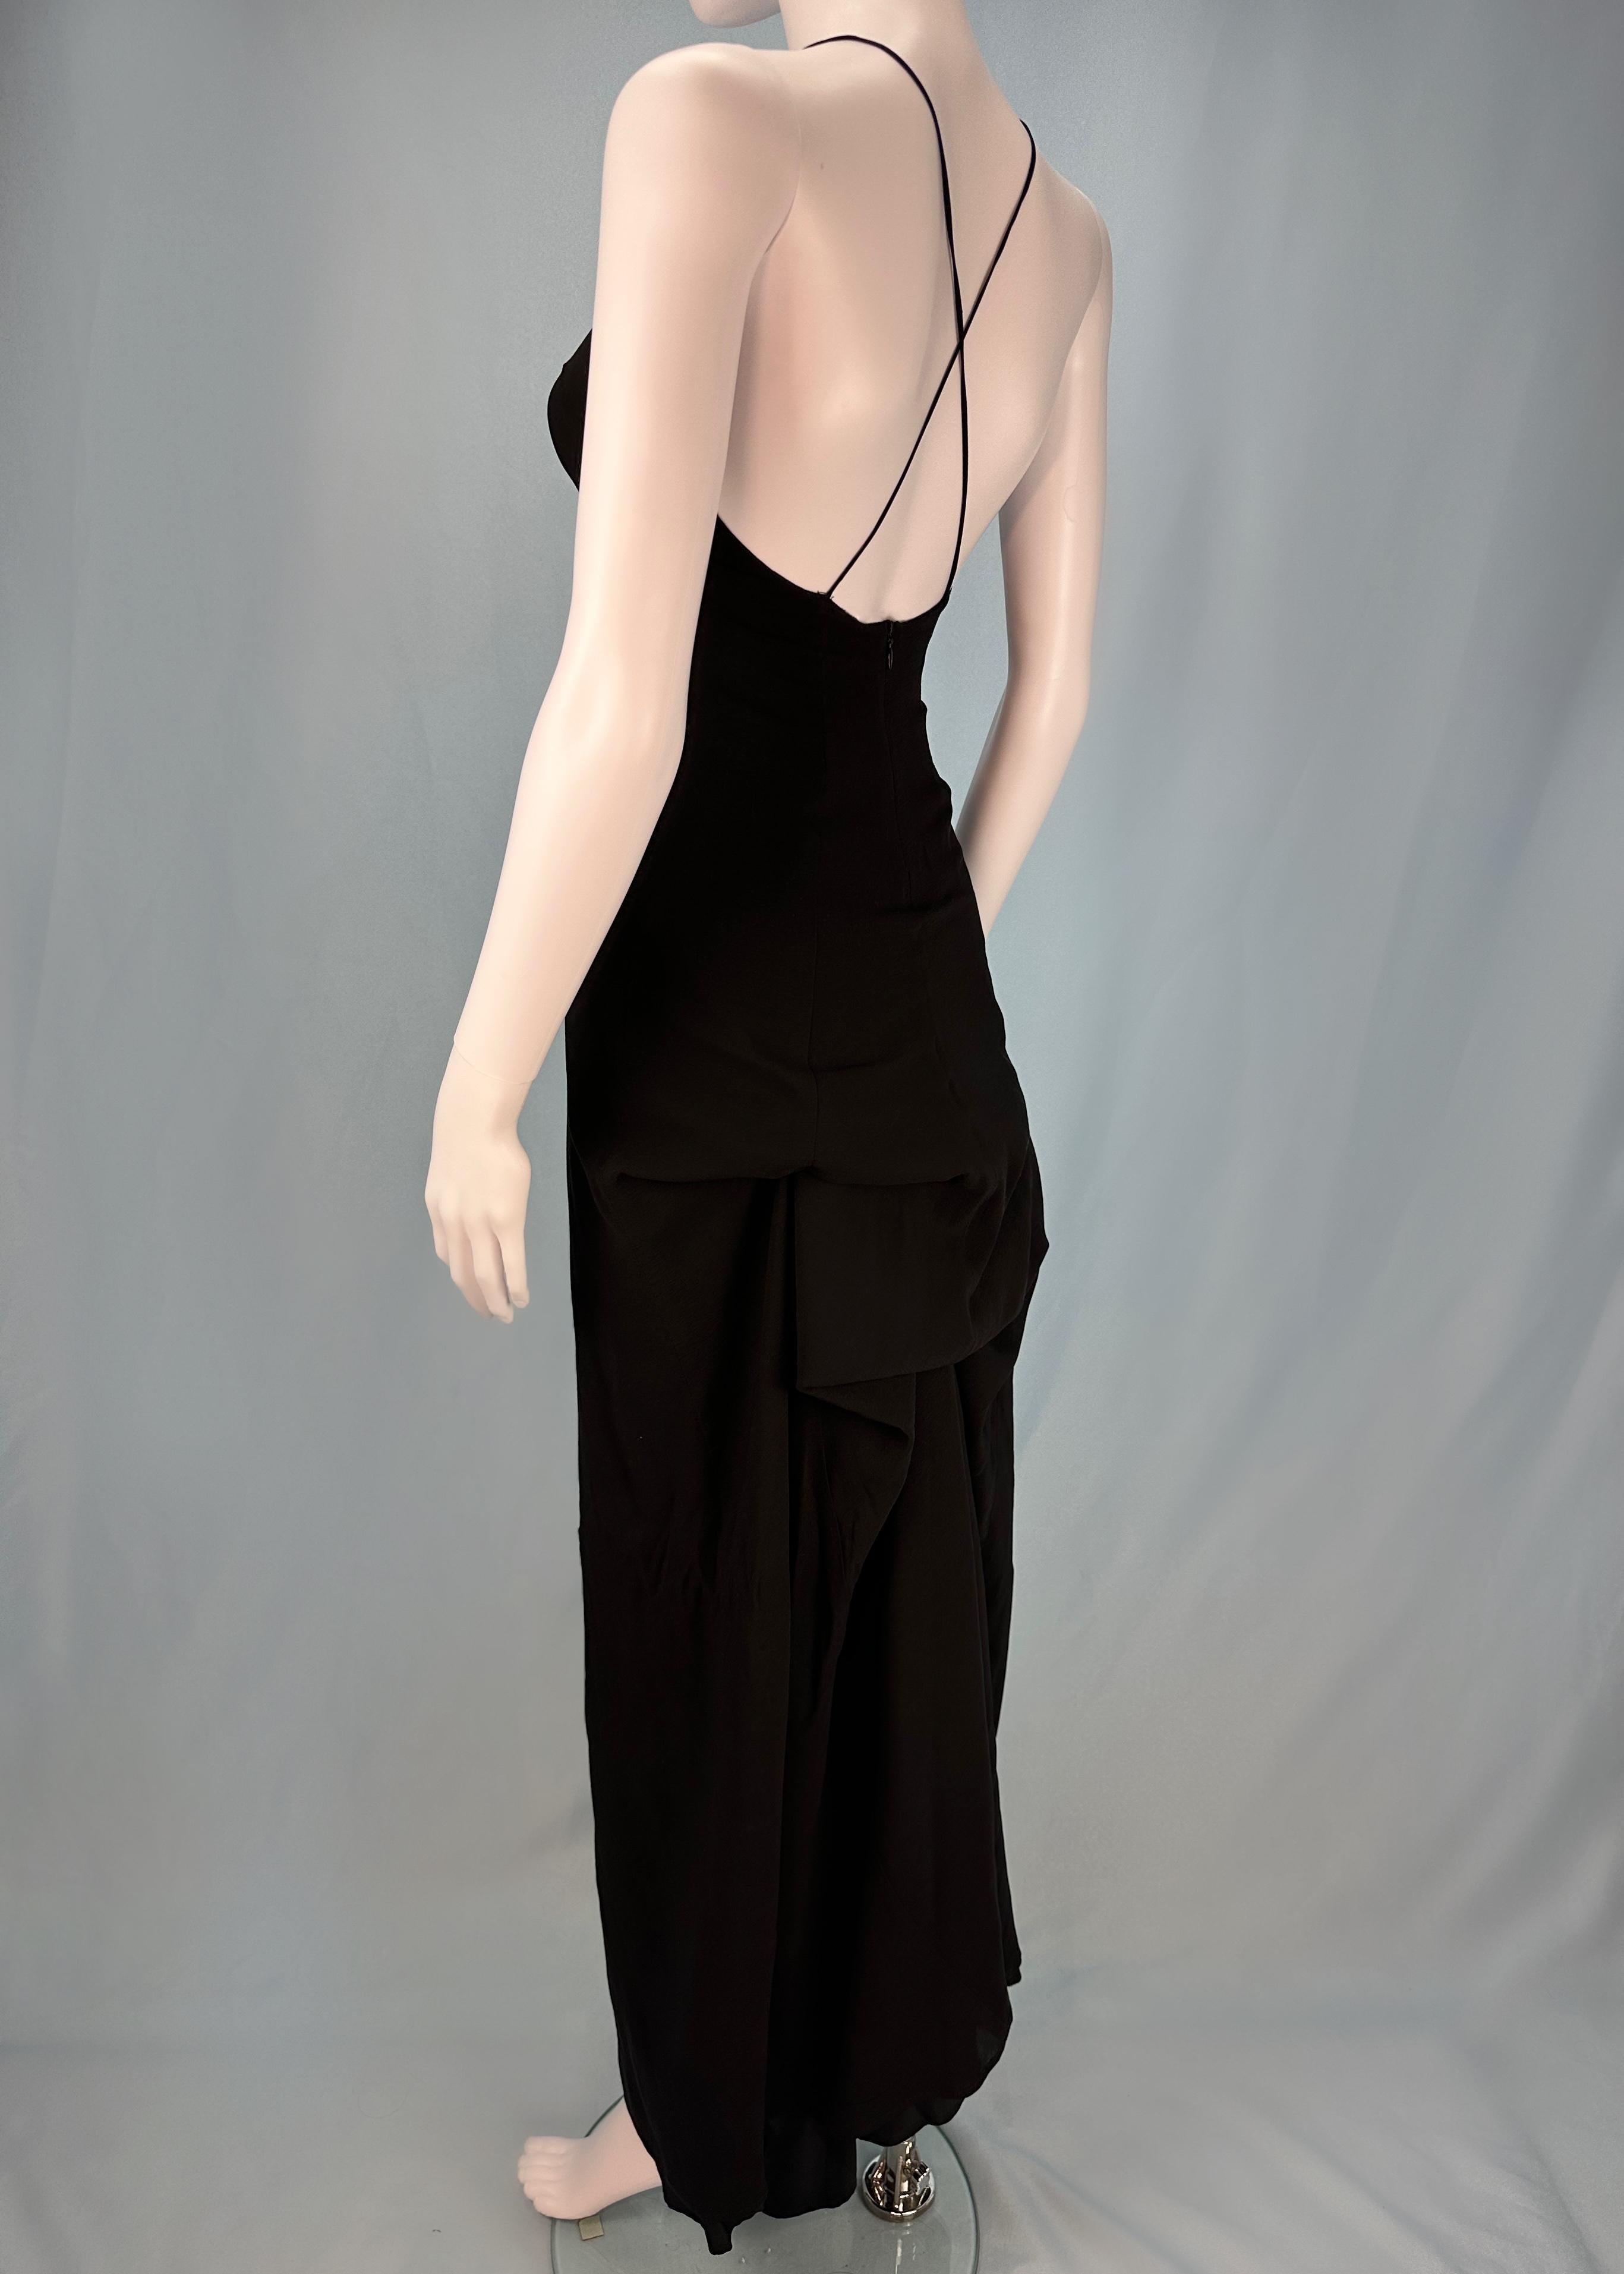 Dries Van Noten Spring 1999 Runway Black Silk Bustle Dress For Sale 1